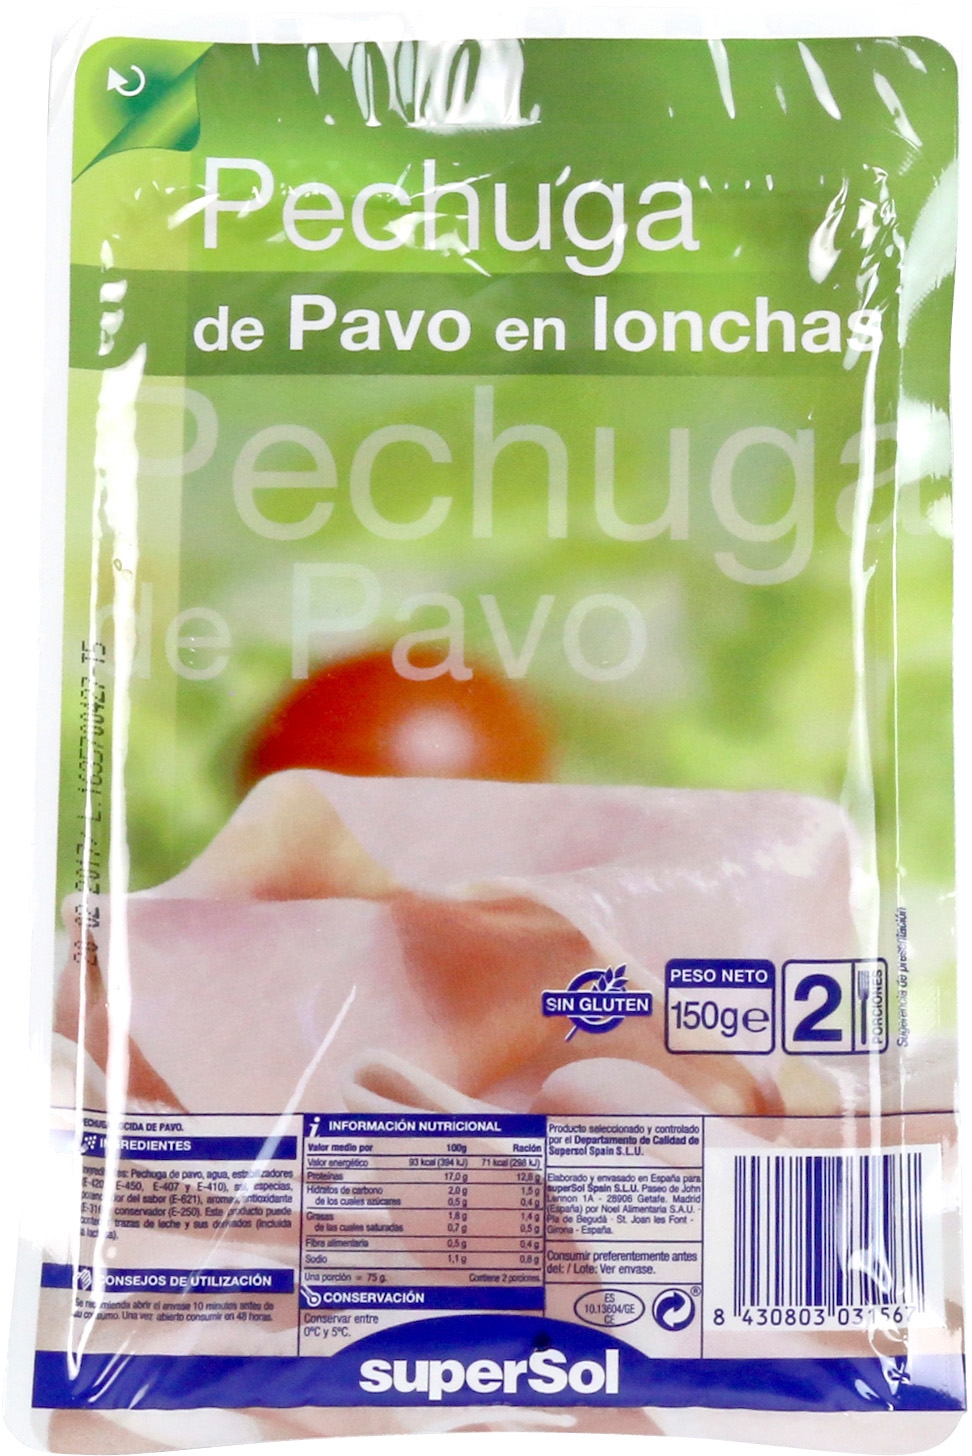 PECHUGA DE PAVO EN LONCHAS